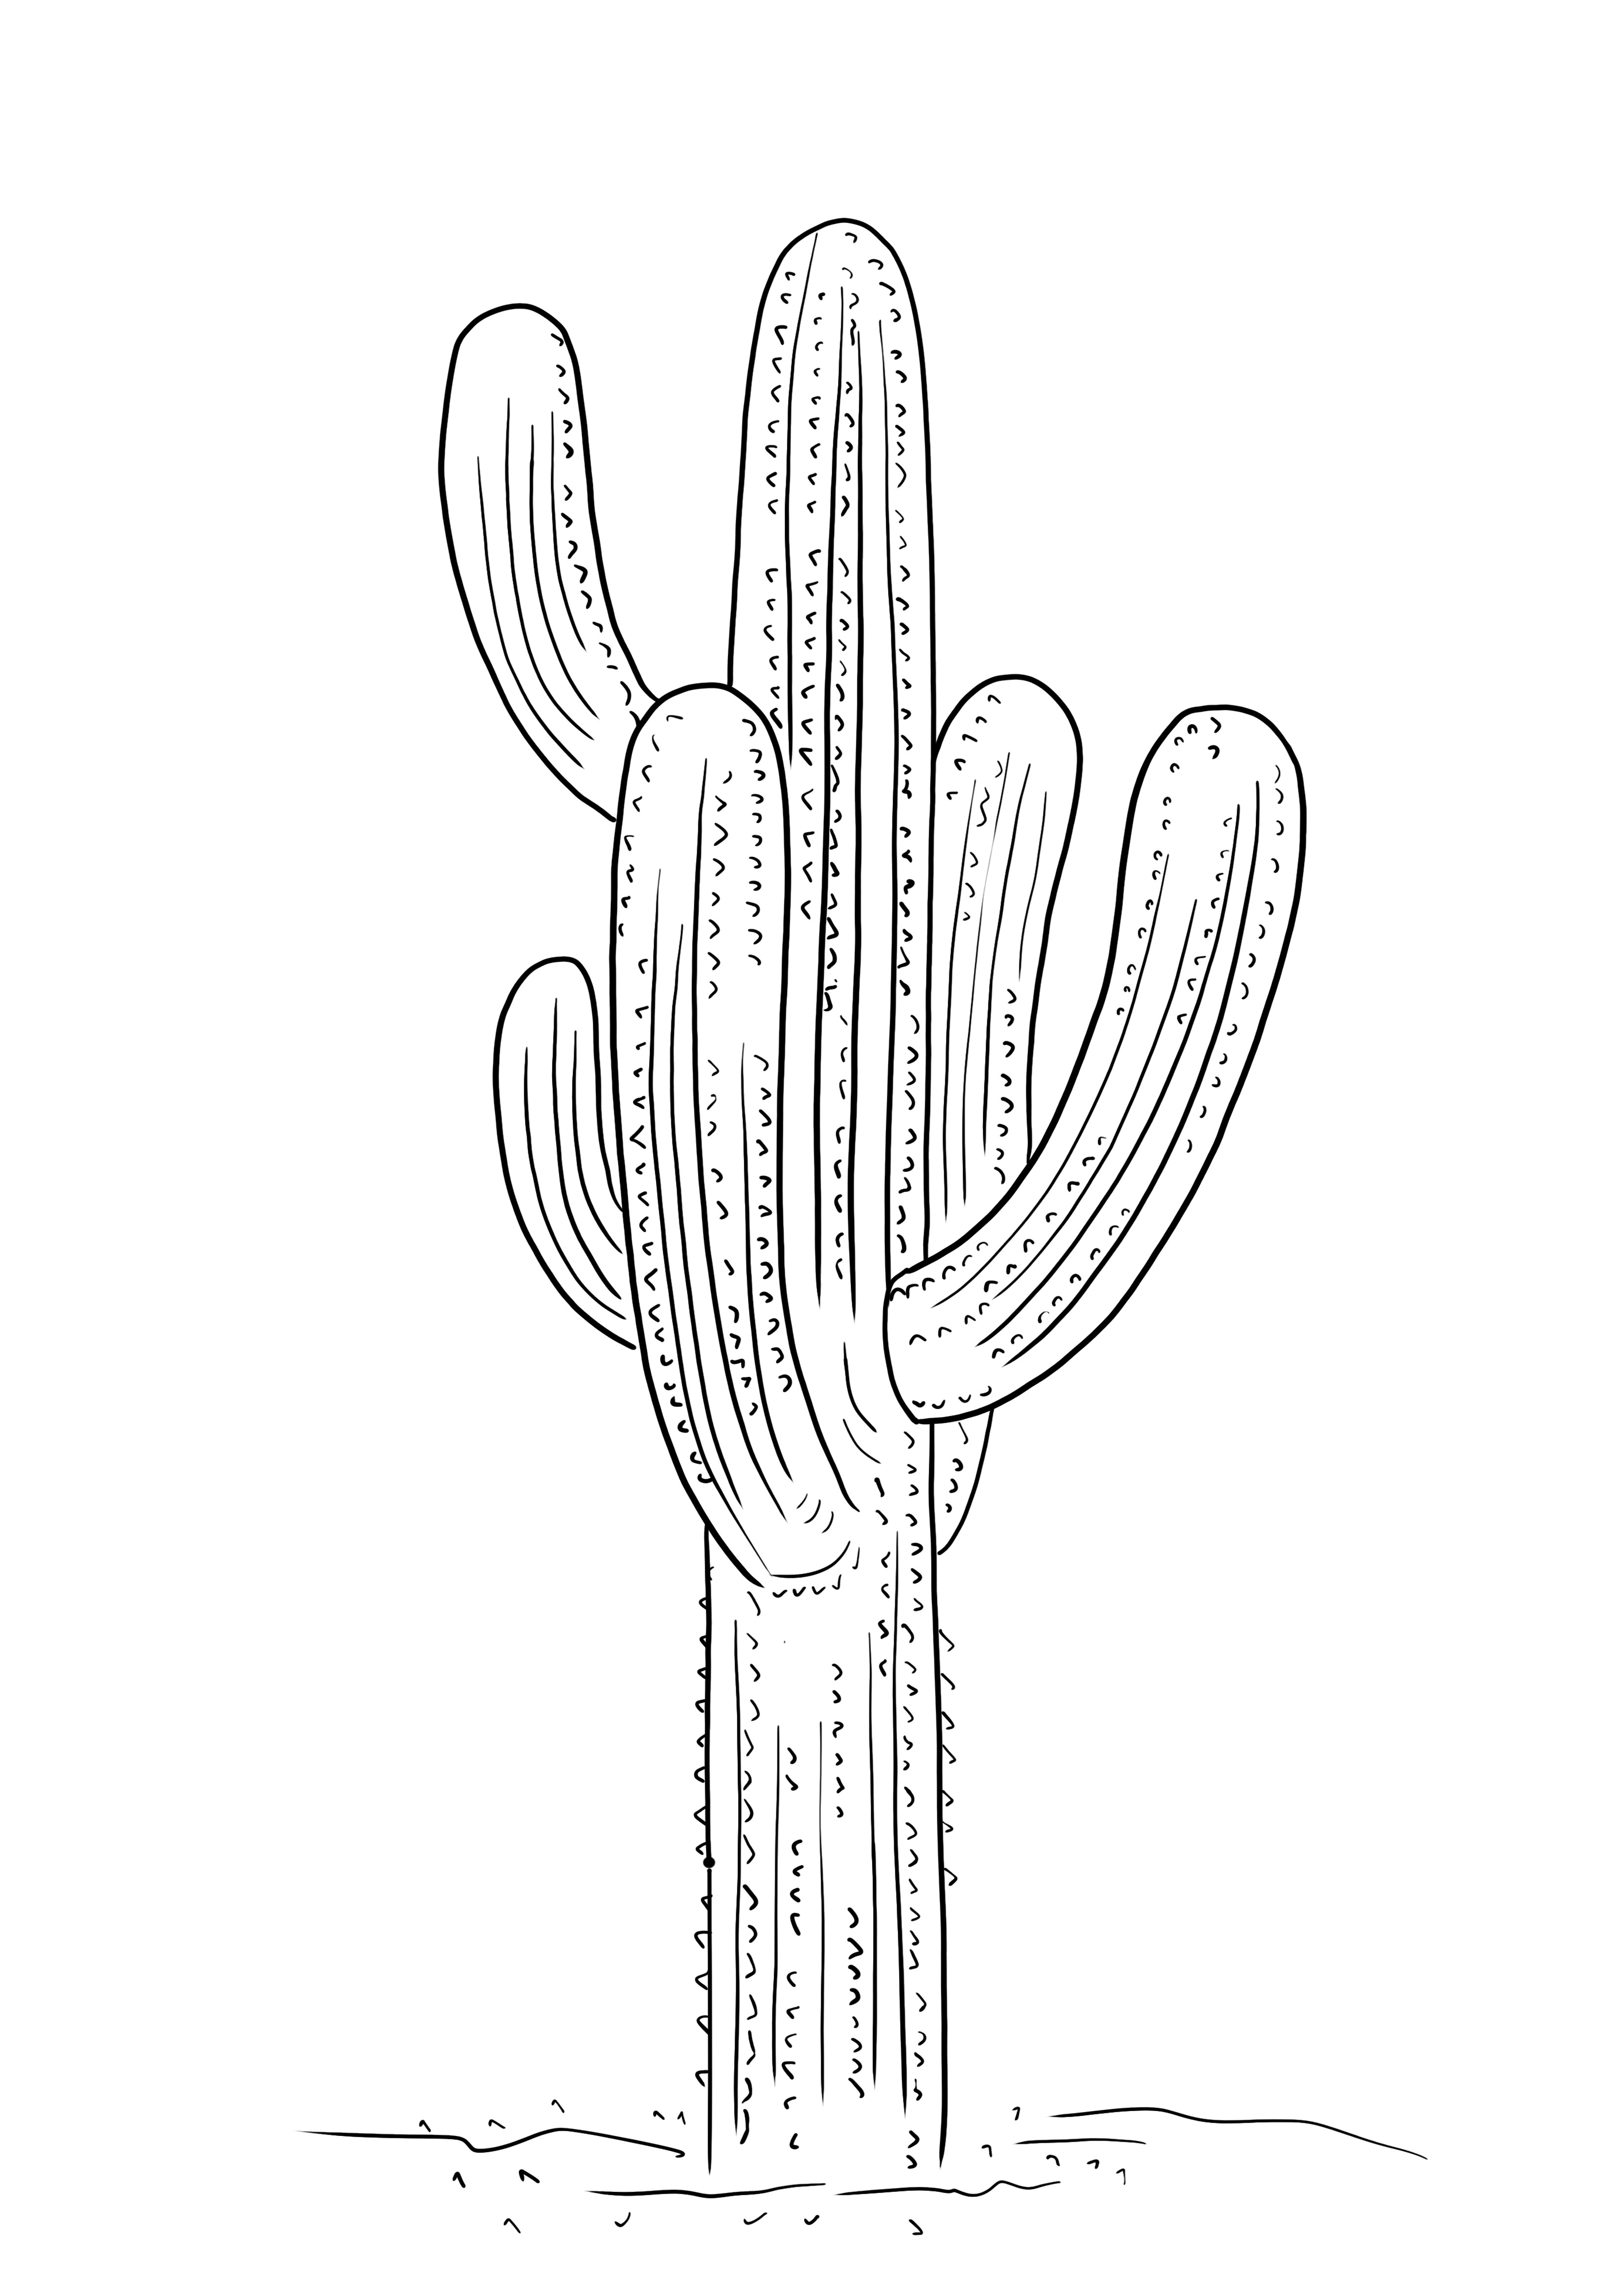 Saguaro-kaktus tulostettavaksi ilmaiseksi lapsille